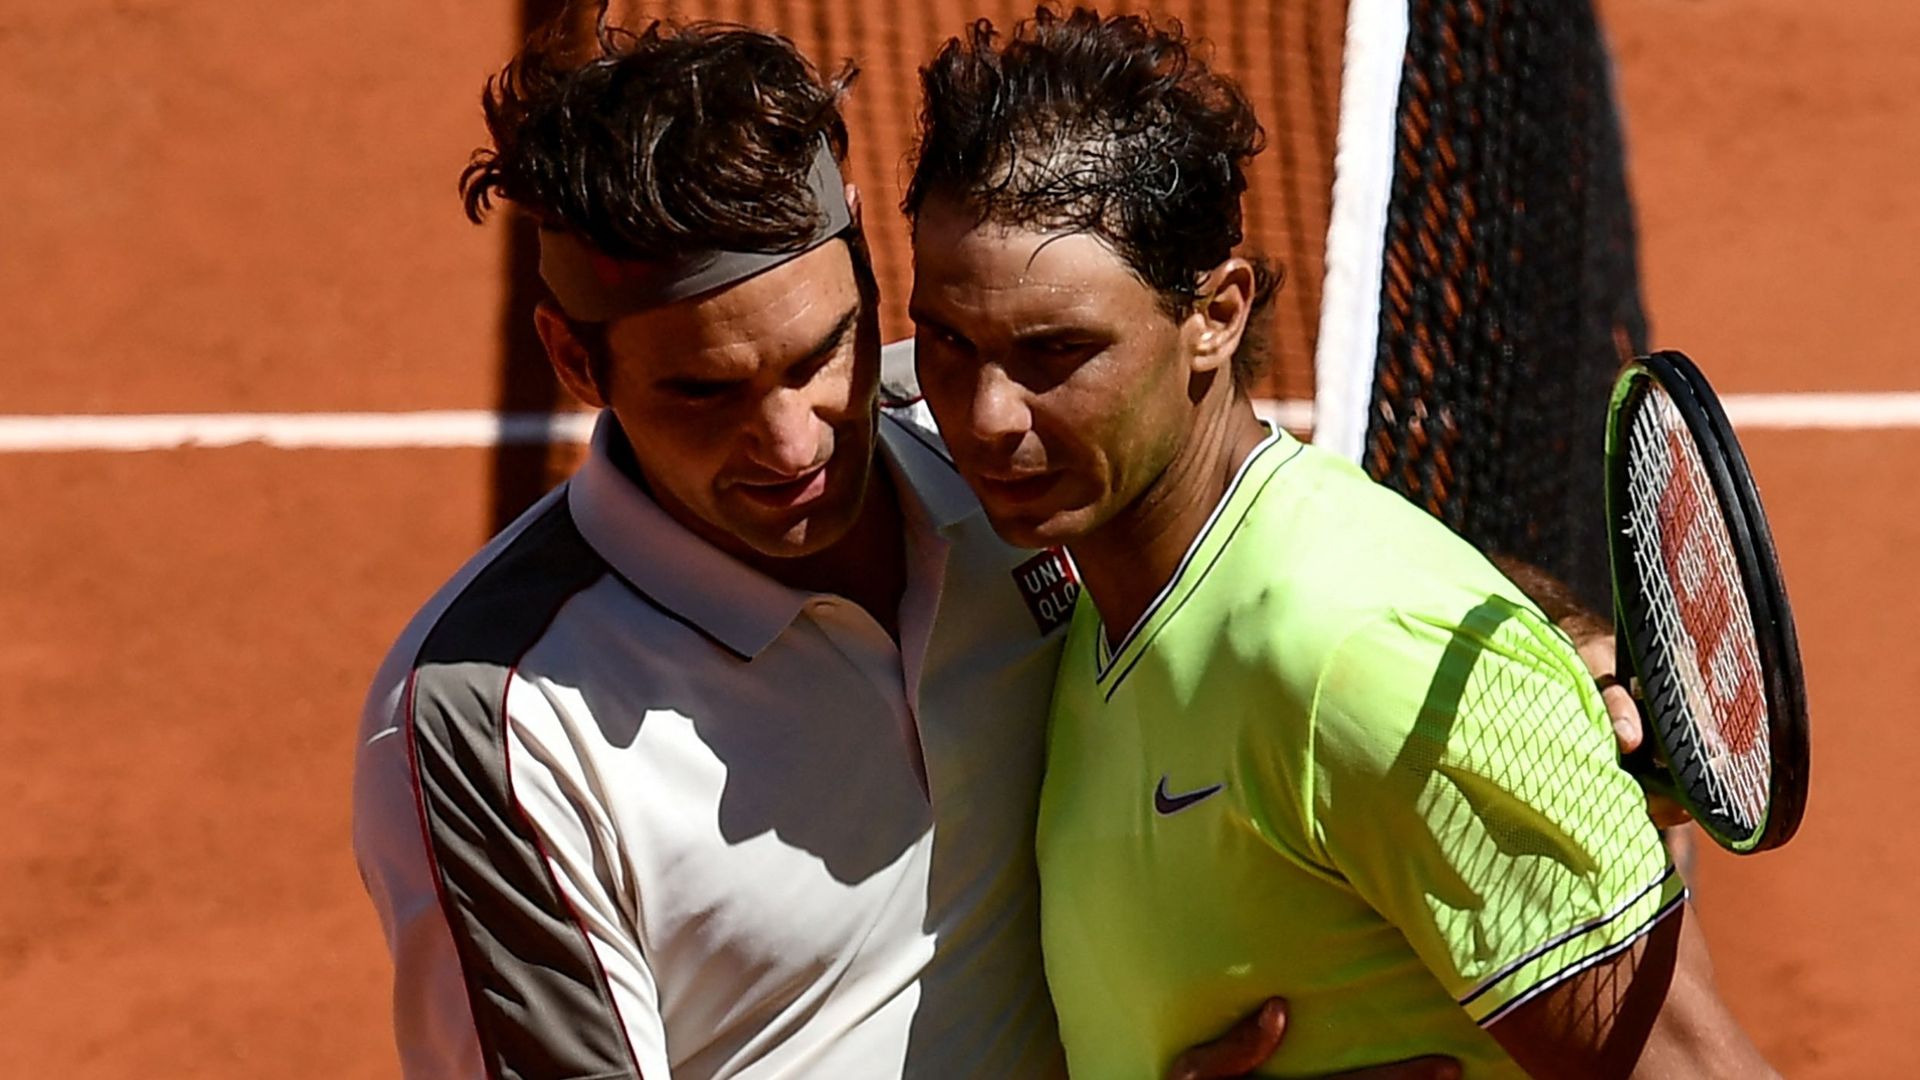 Roger Federer explique pourquoi il a pris sa retraite et fait une demande osée à Nadal